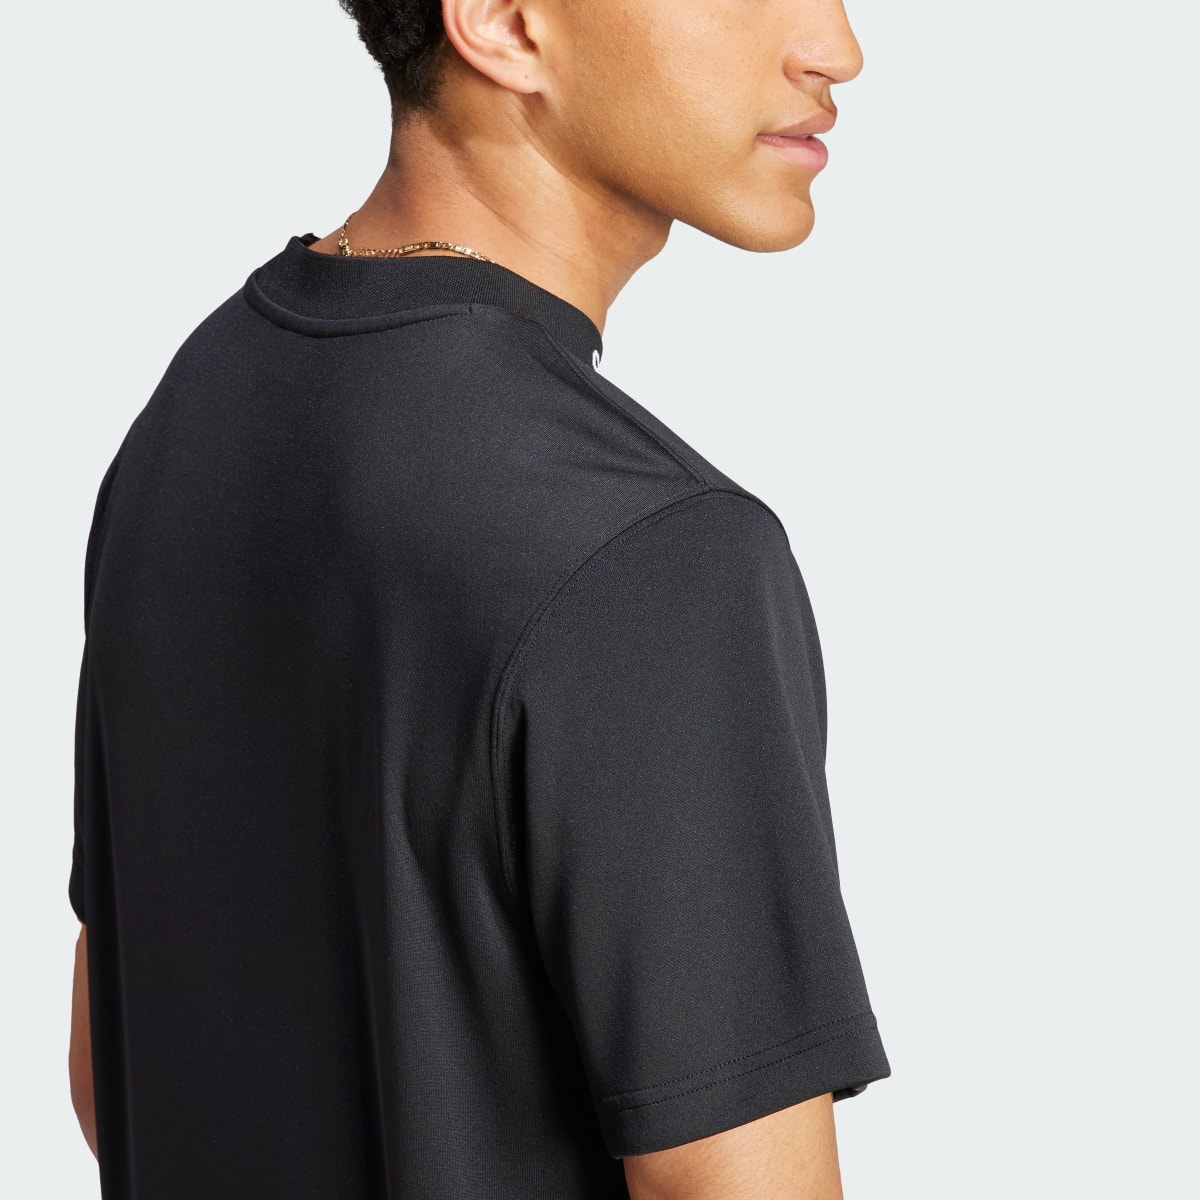 Adidas T-shirt com Costas em Rede. 7